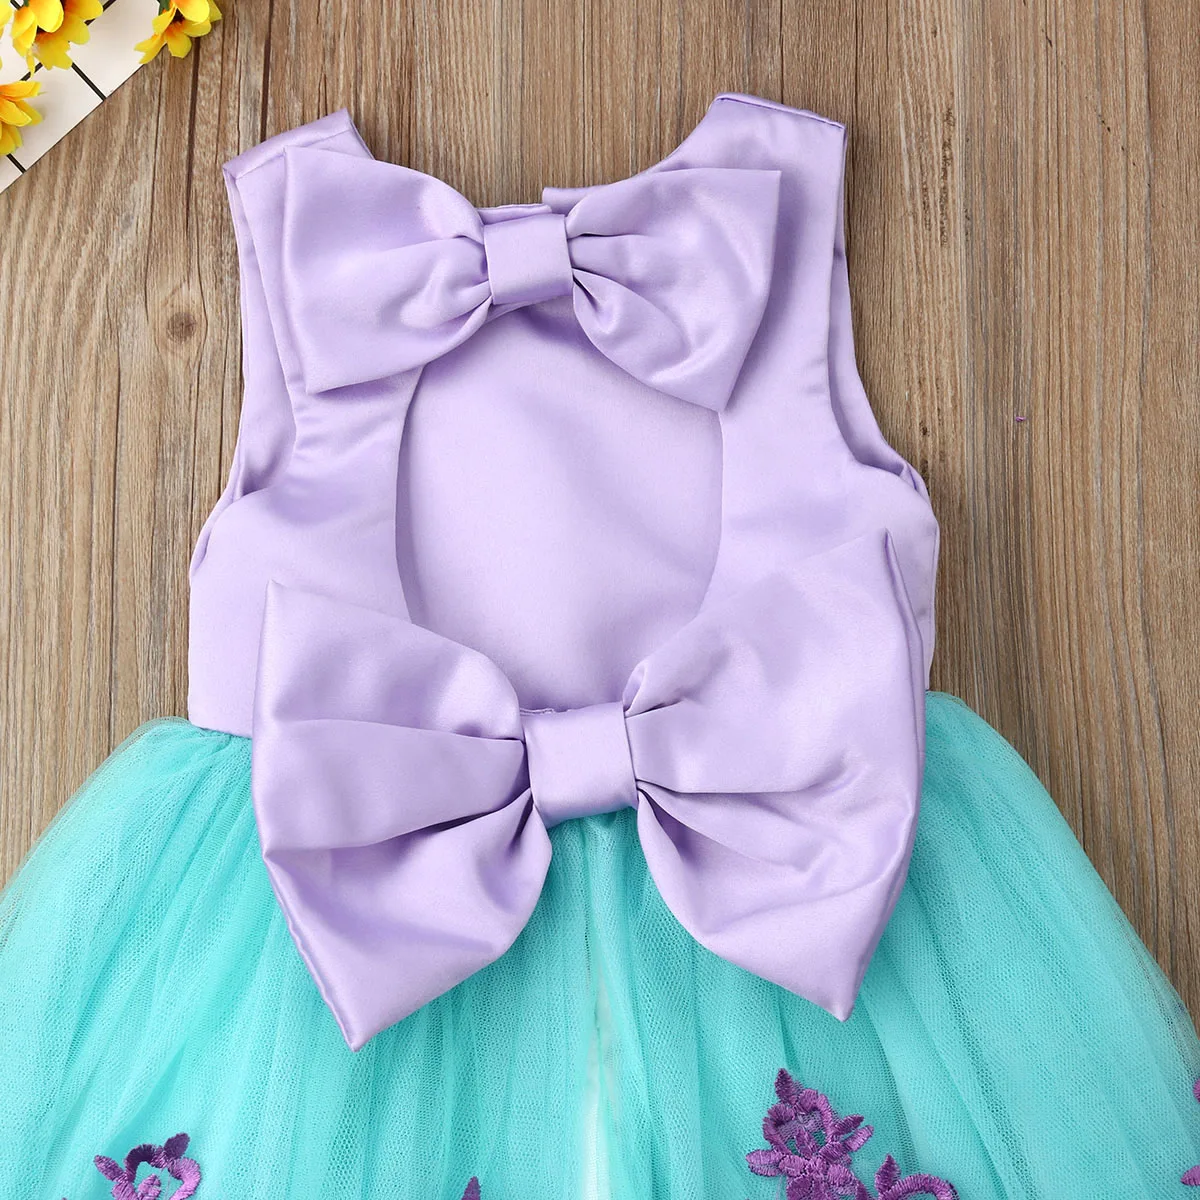 Pudcoco/платье для девочек; От 6 месяцев до 5 лет США; детское кружевное платье-пачка принцессы с бантом для маленьких девочек; Бальные вечерние платья; платье подружки невесты